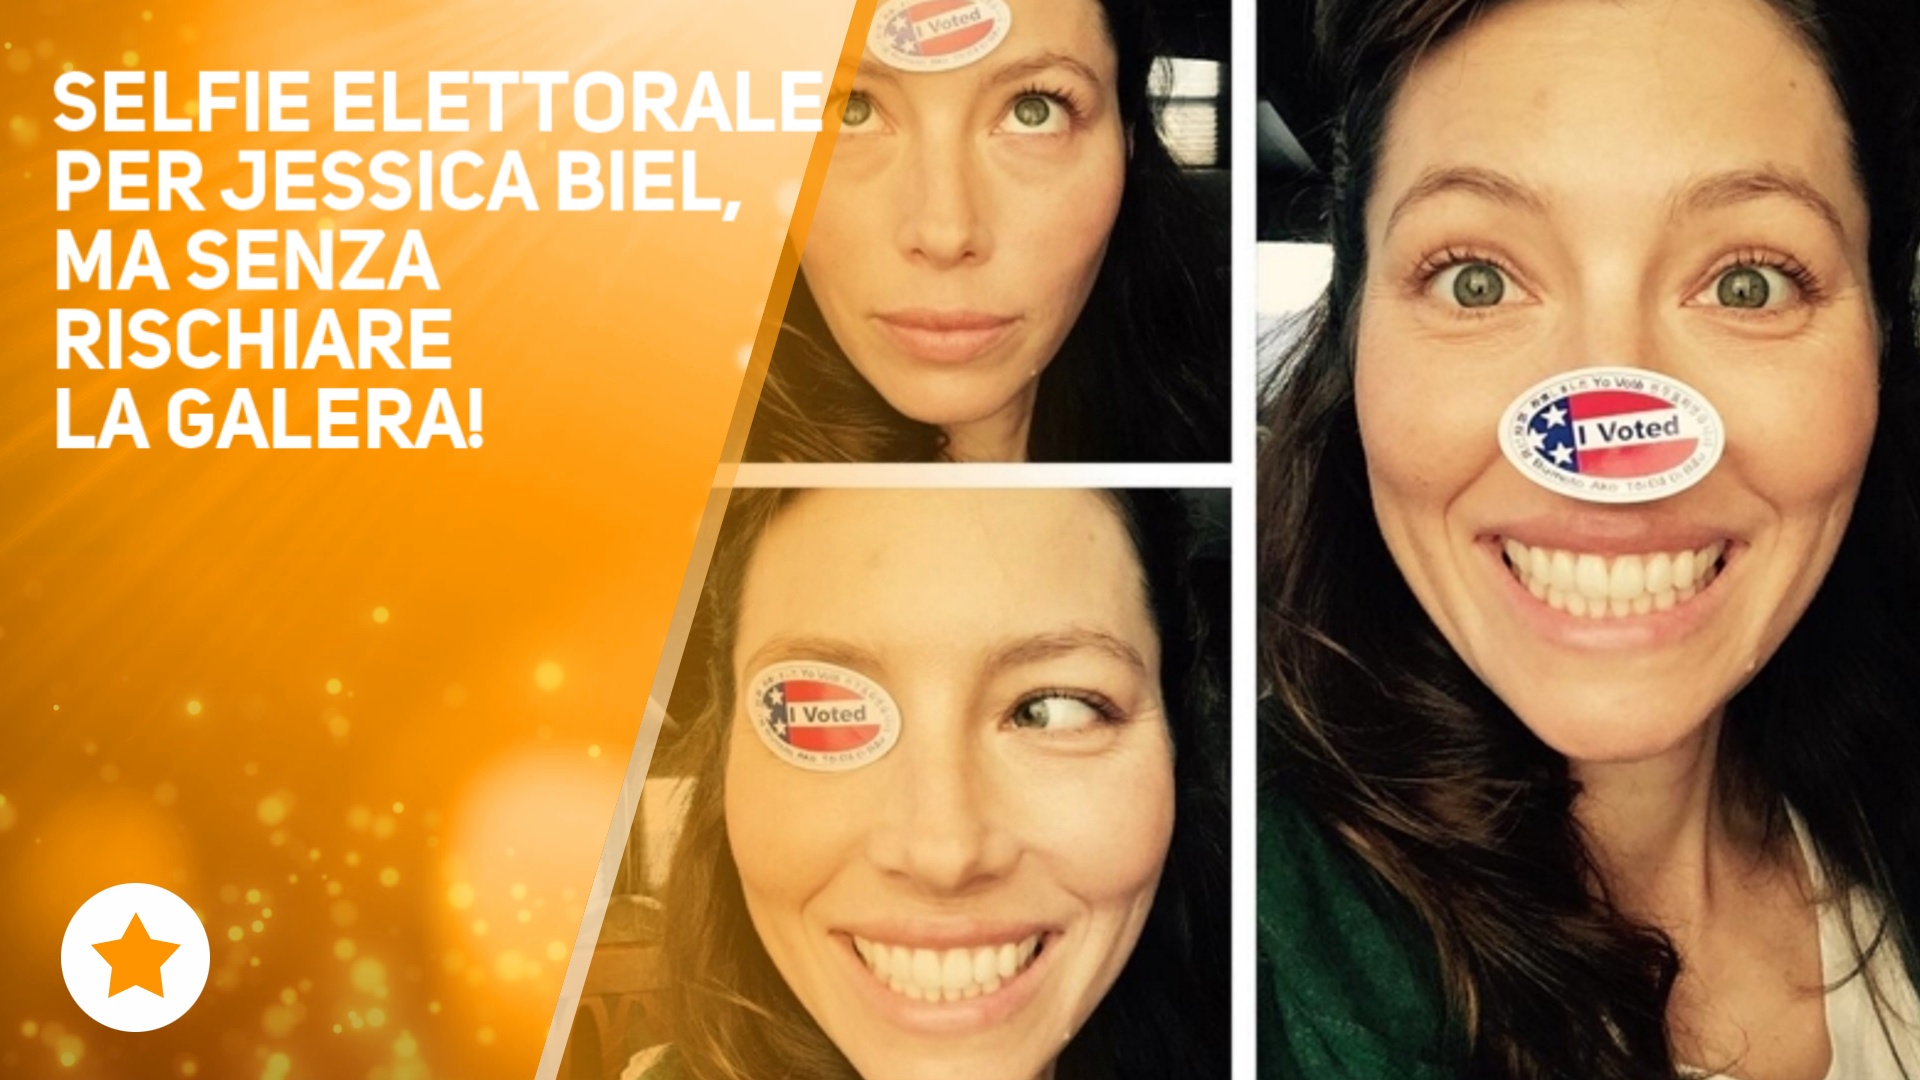 Jessica Biel: 'Maritino i selfie al voto si fanno cosi''